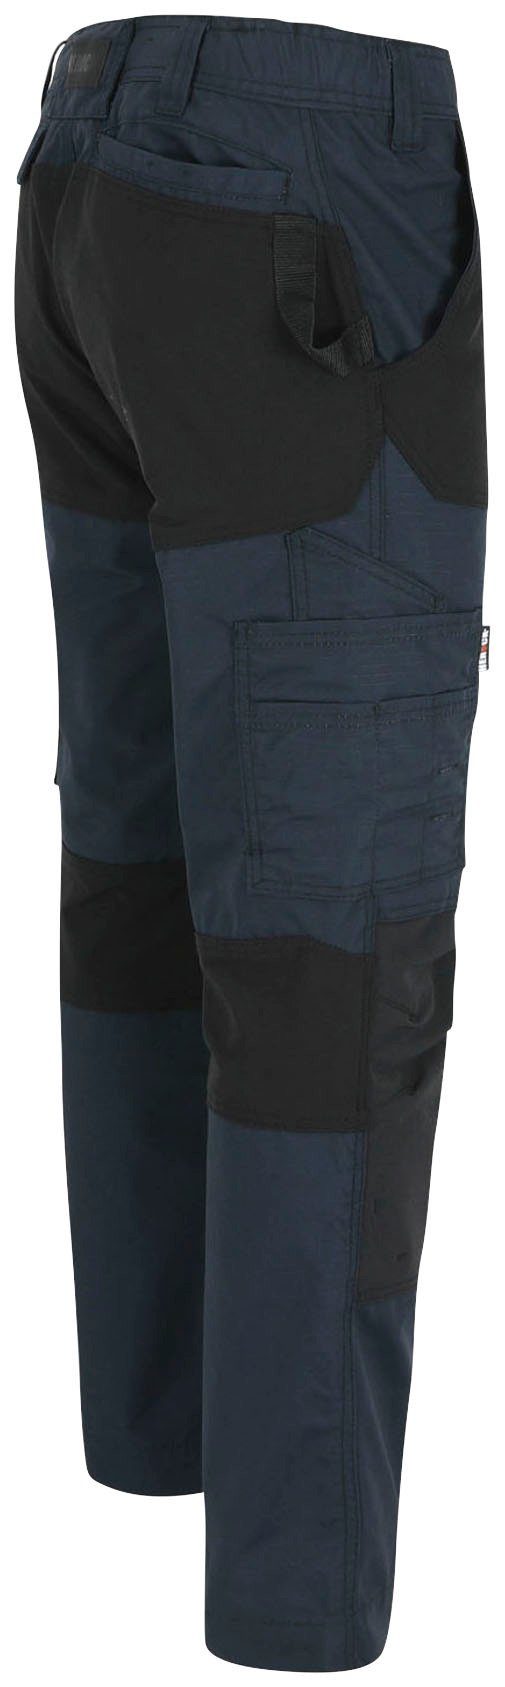 Arbeitshose 4-Wege-Stretch, verstärkte Knietaschen Hector marine Multi-Pocket, Herock verdeckter Knopf, Hoses